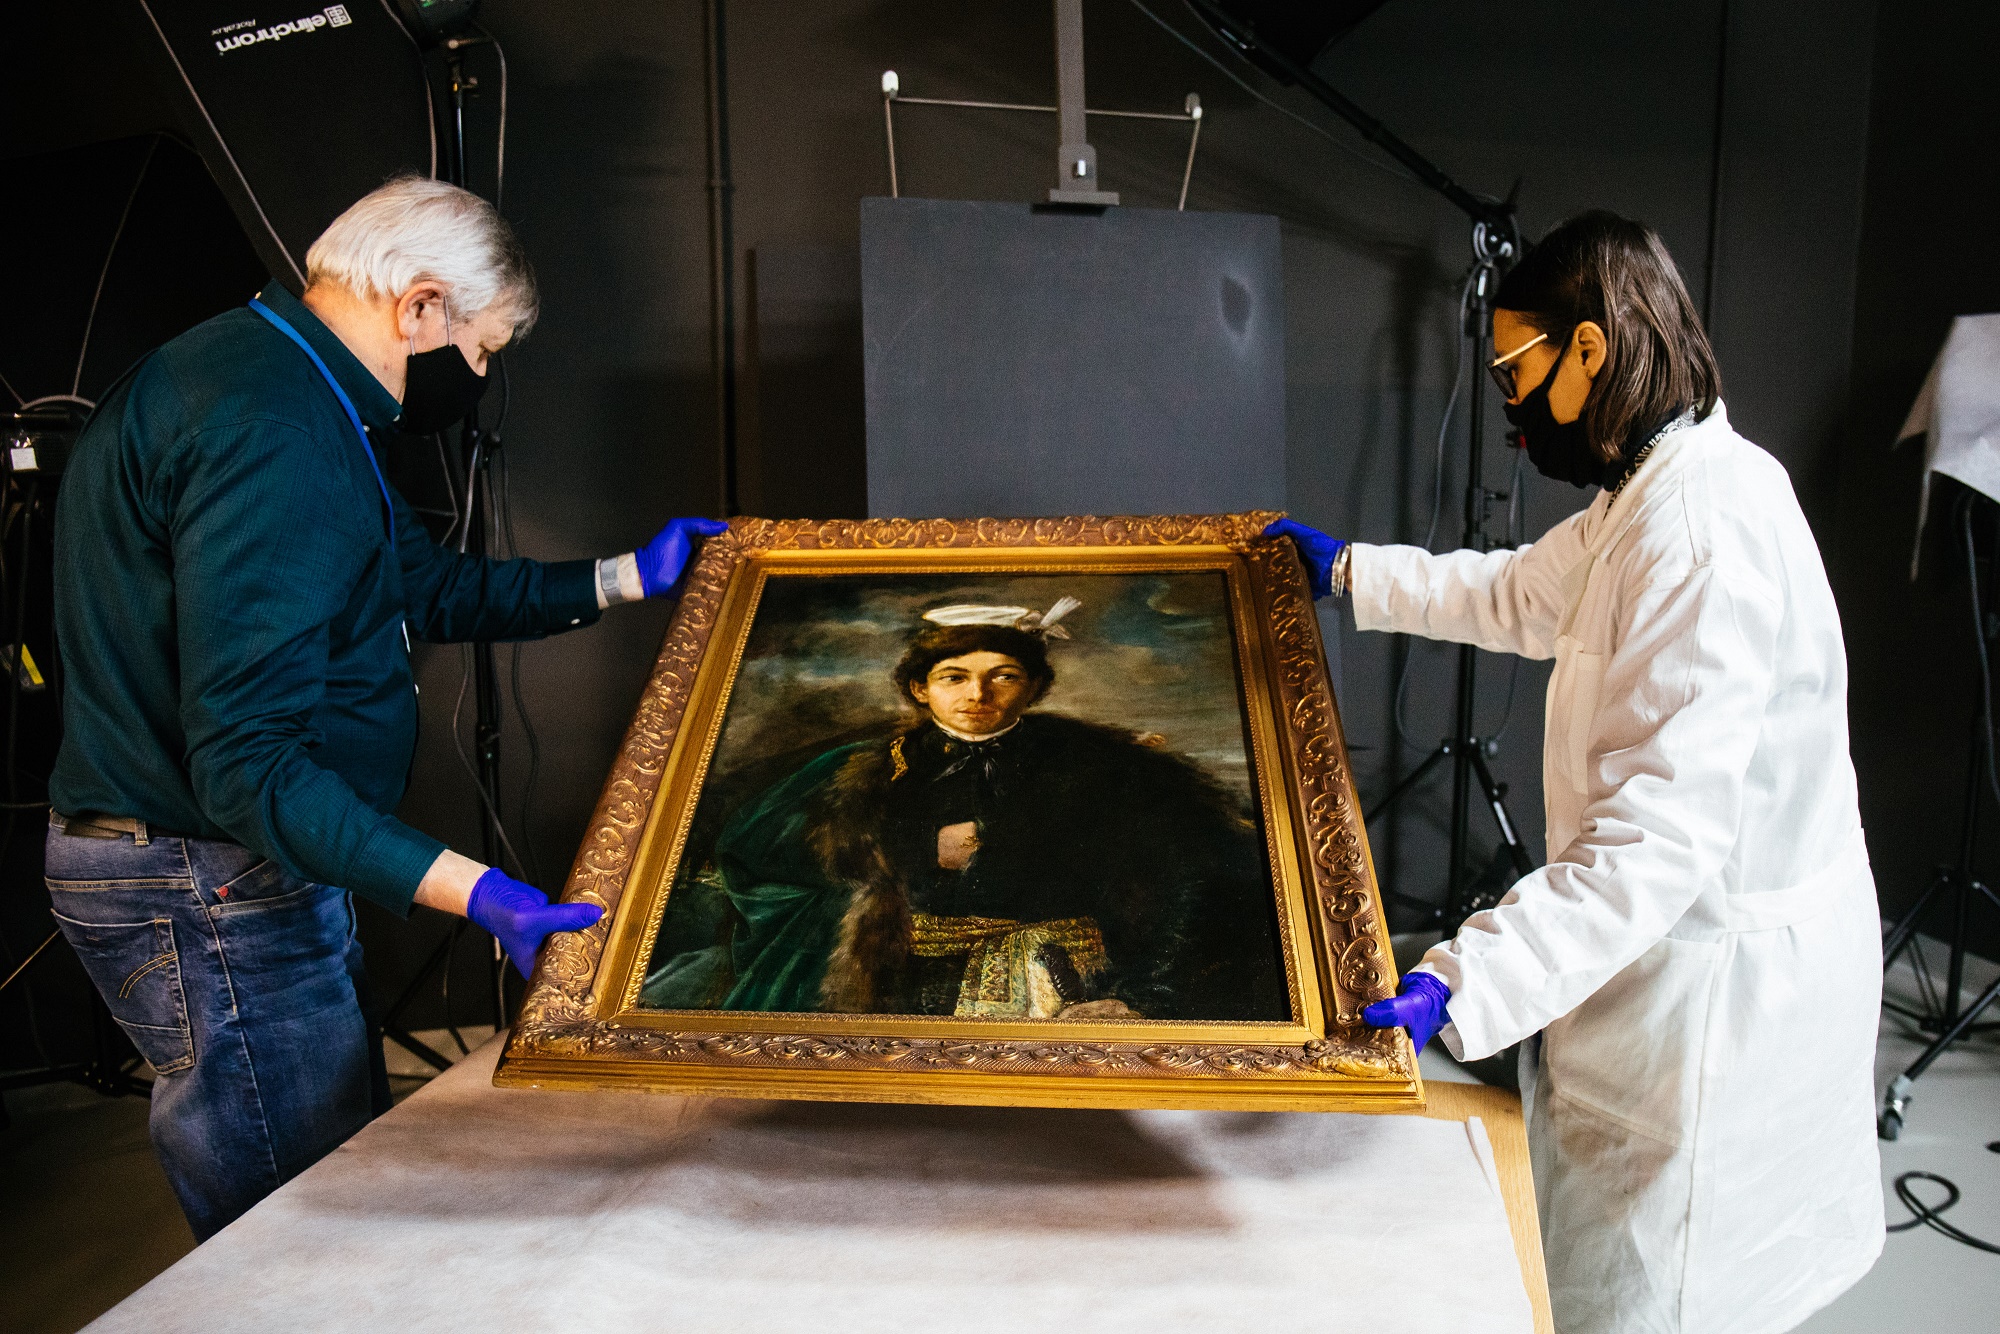 Na obrazie widzimy dwie osoby - kobietę i mężczyznę trzymających obraz Maurycy Gottlieb - „Autoportret w stroju polskiego szlachcica”